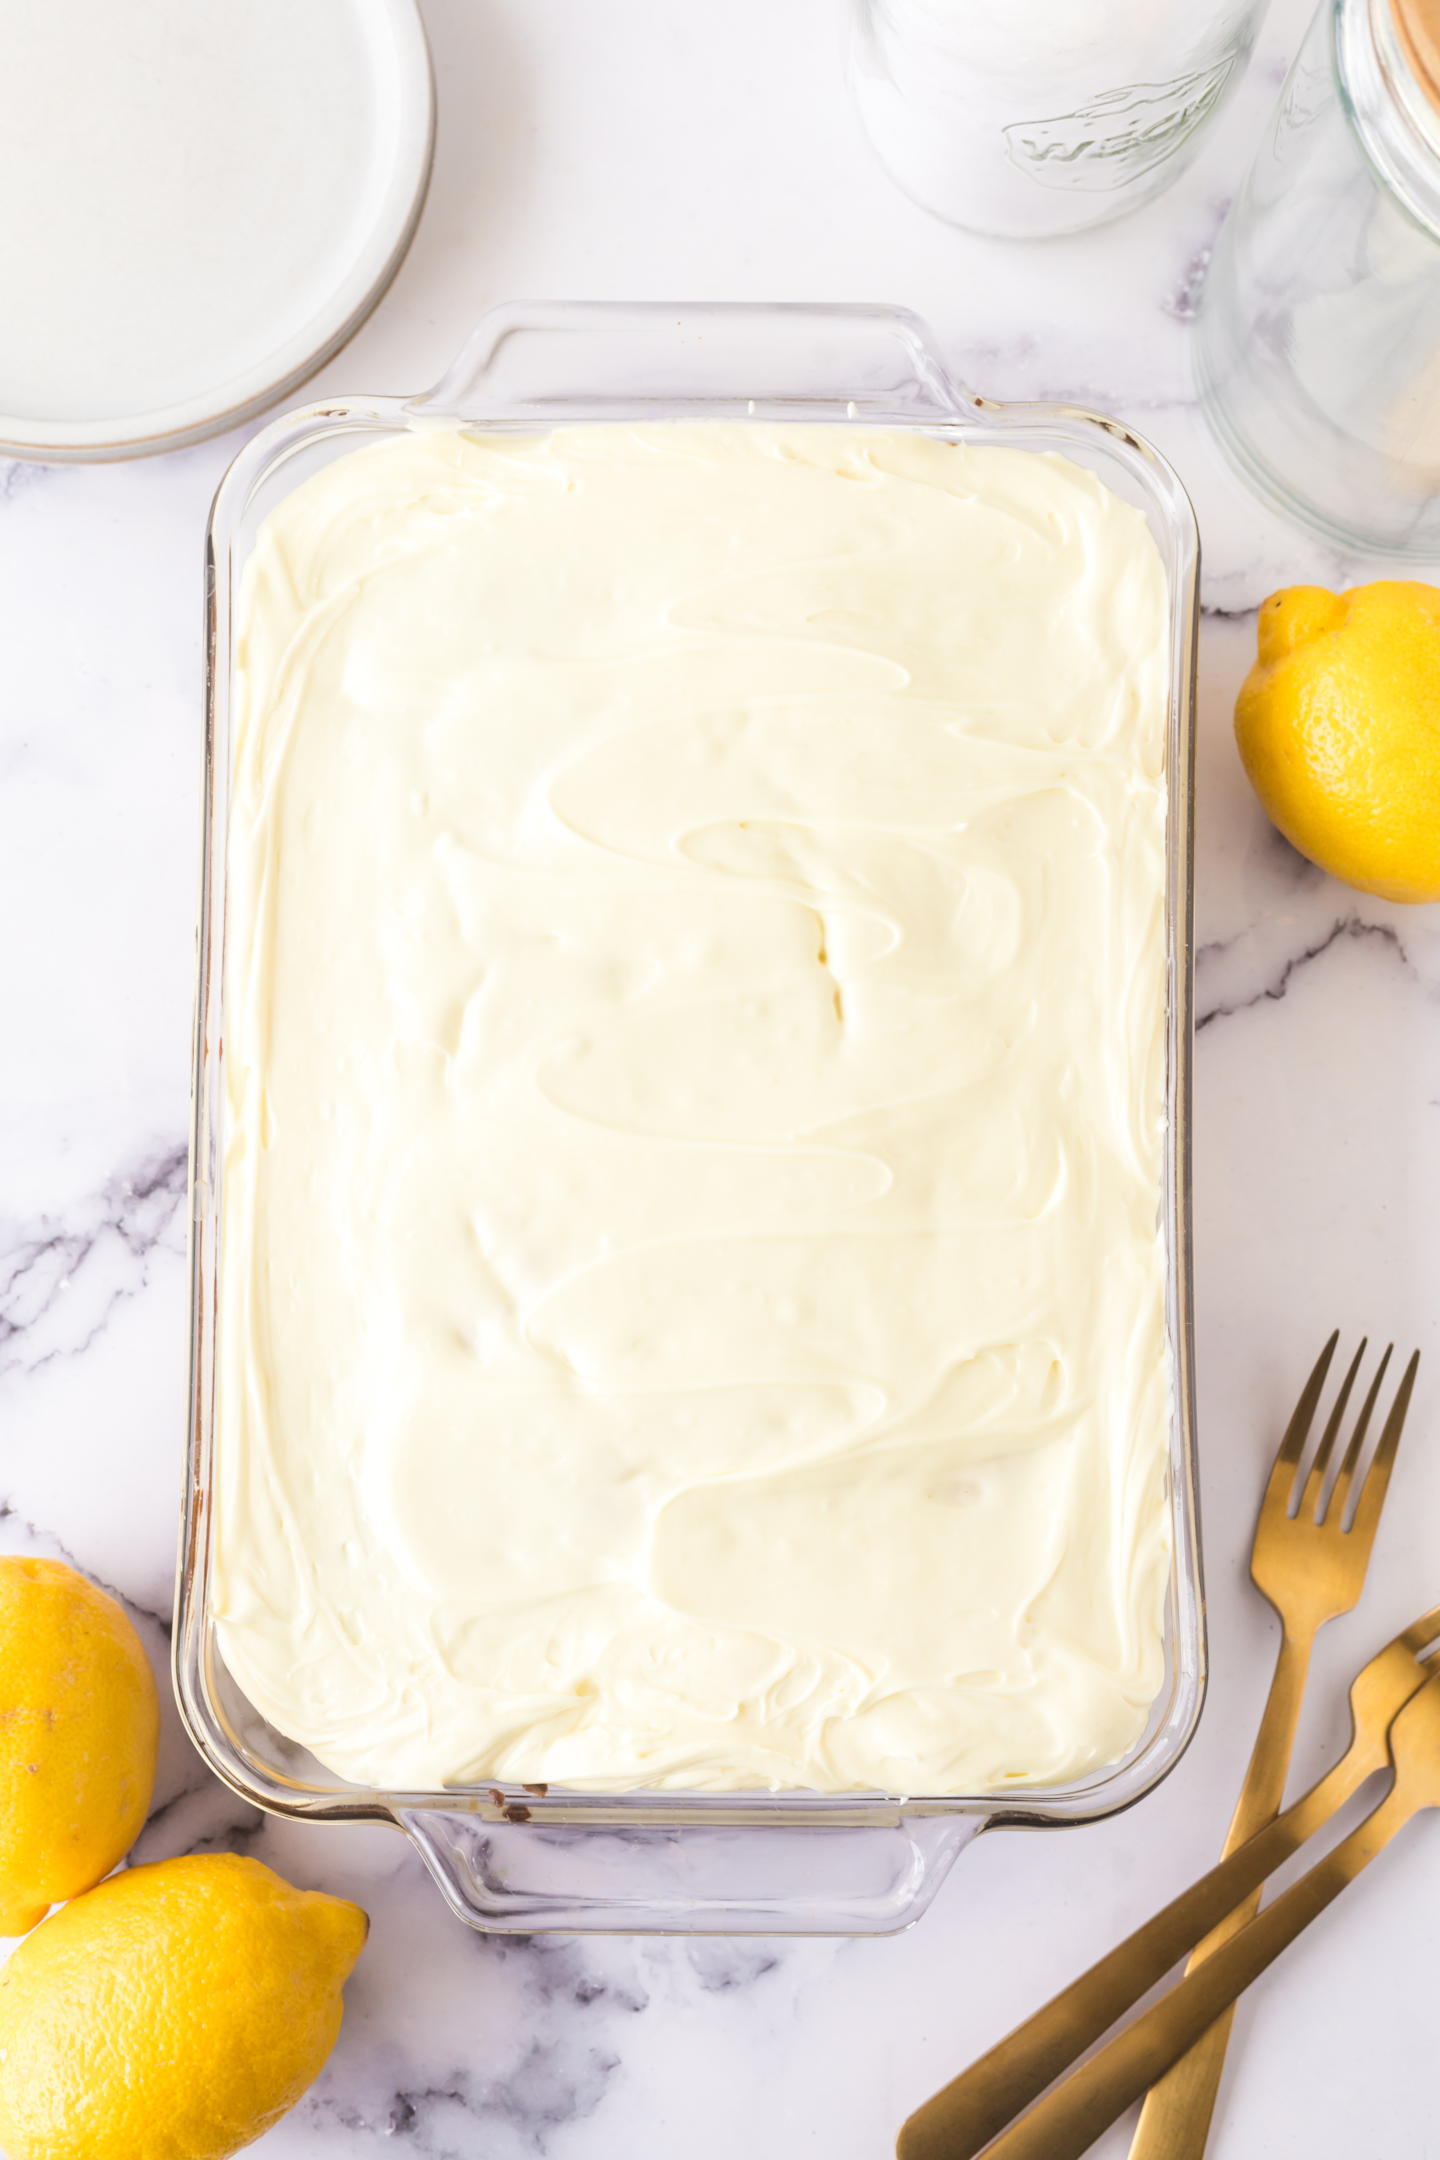 frosted lemon cake in baking pan